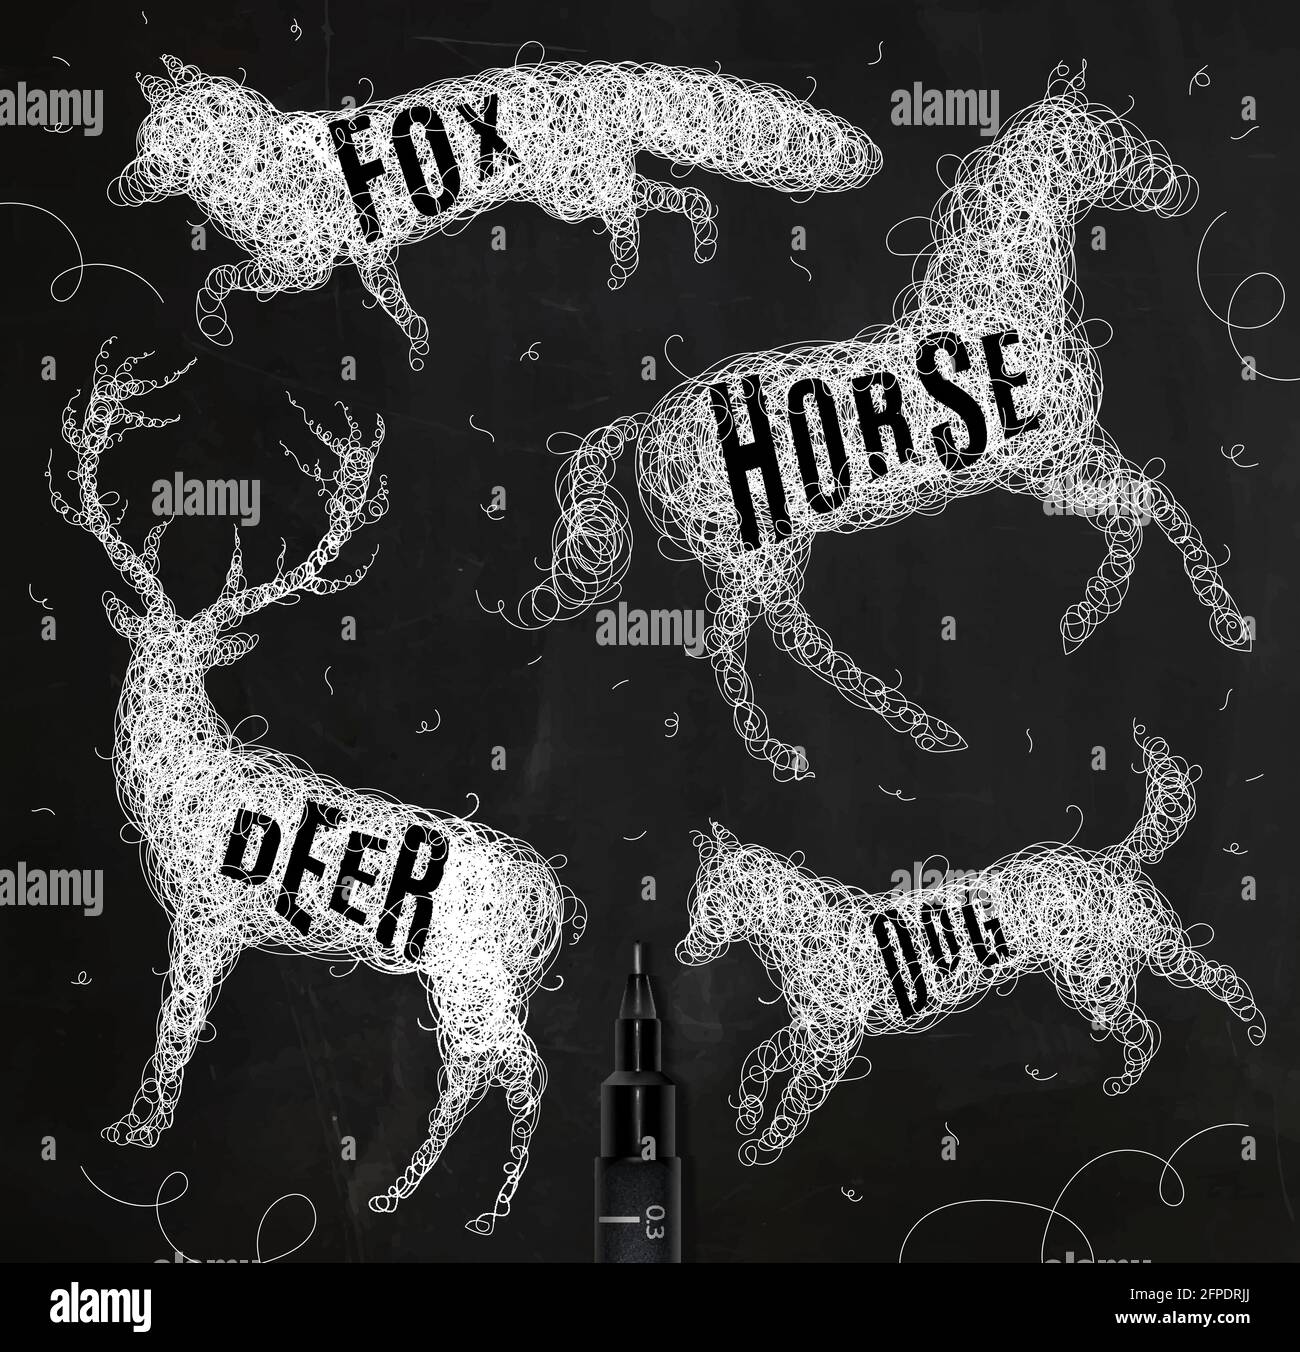 Penna disegno a mano groviglio animali selvatici cervo, cavallo, volpe, cane con iscrizione nomi di animali disegno con inchiostro bianco su sfondo nero Illustrazione Vettoriale